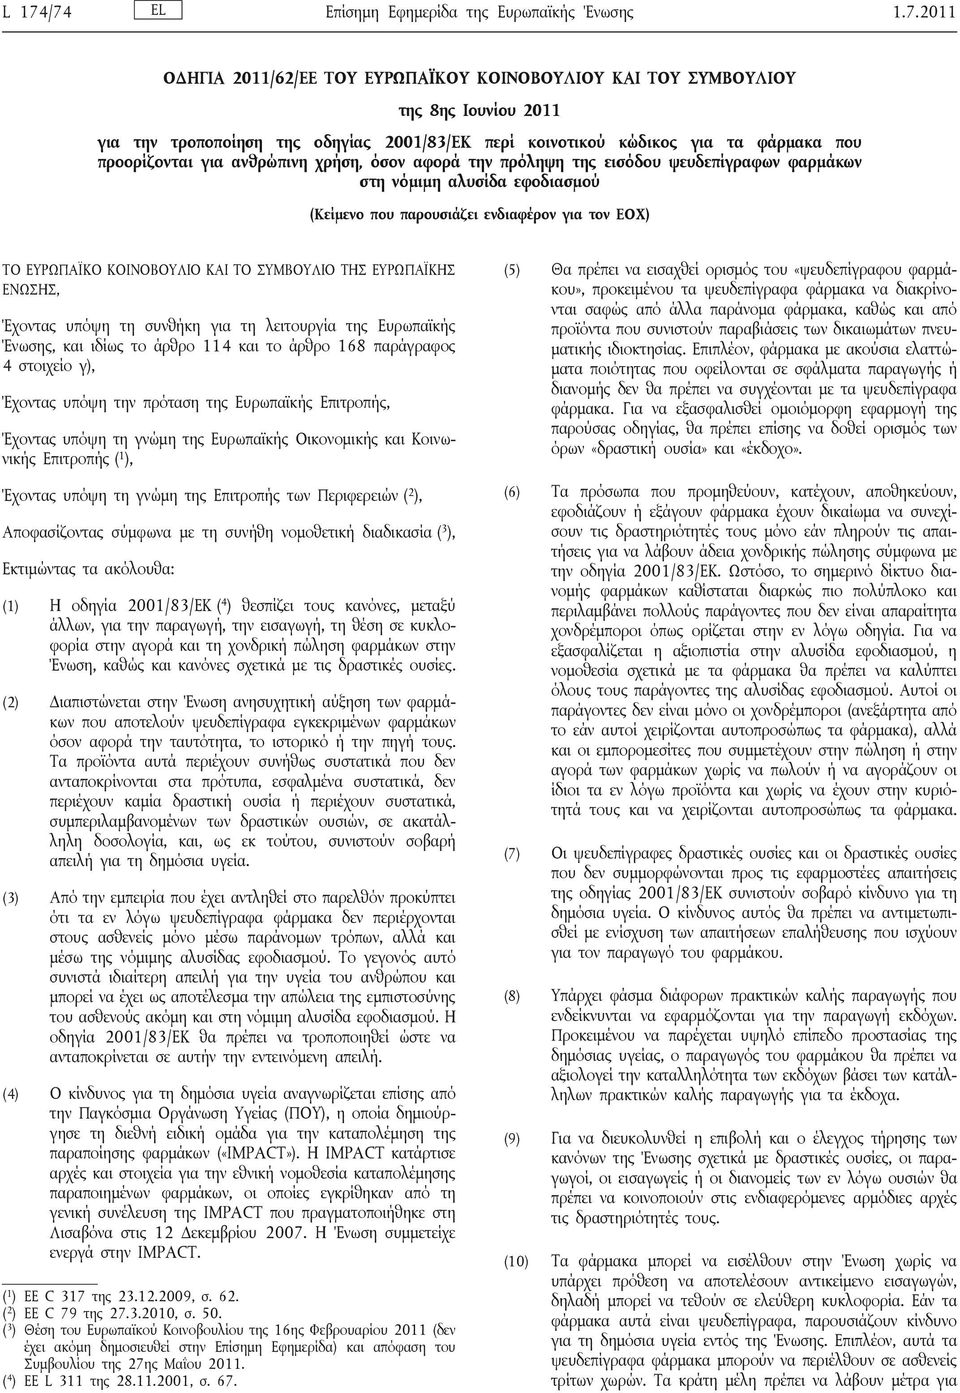 τον ΕΟΧ) ΤΟ ΕΥΡΩΠΑΪΚΟ ΚΟΙΝΟΒΟΥΛΙΟ ΚΑΙ ΤΟ ΣΥΜΒΟΥΛΙΟ ΤΗΣ ΕΥΡΩΠΑΪΚΗΣ ΕΝΩΣΗΣ, Έχοντας υπόψη τη συνθήκη για τη λειτουργία της Ευρωπαϊκής Ένωσης, και ιδίως το άρθρο 114 και το άρθρο 168 παράγραφος 4